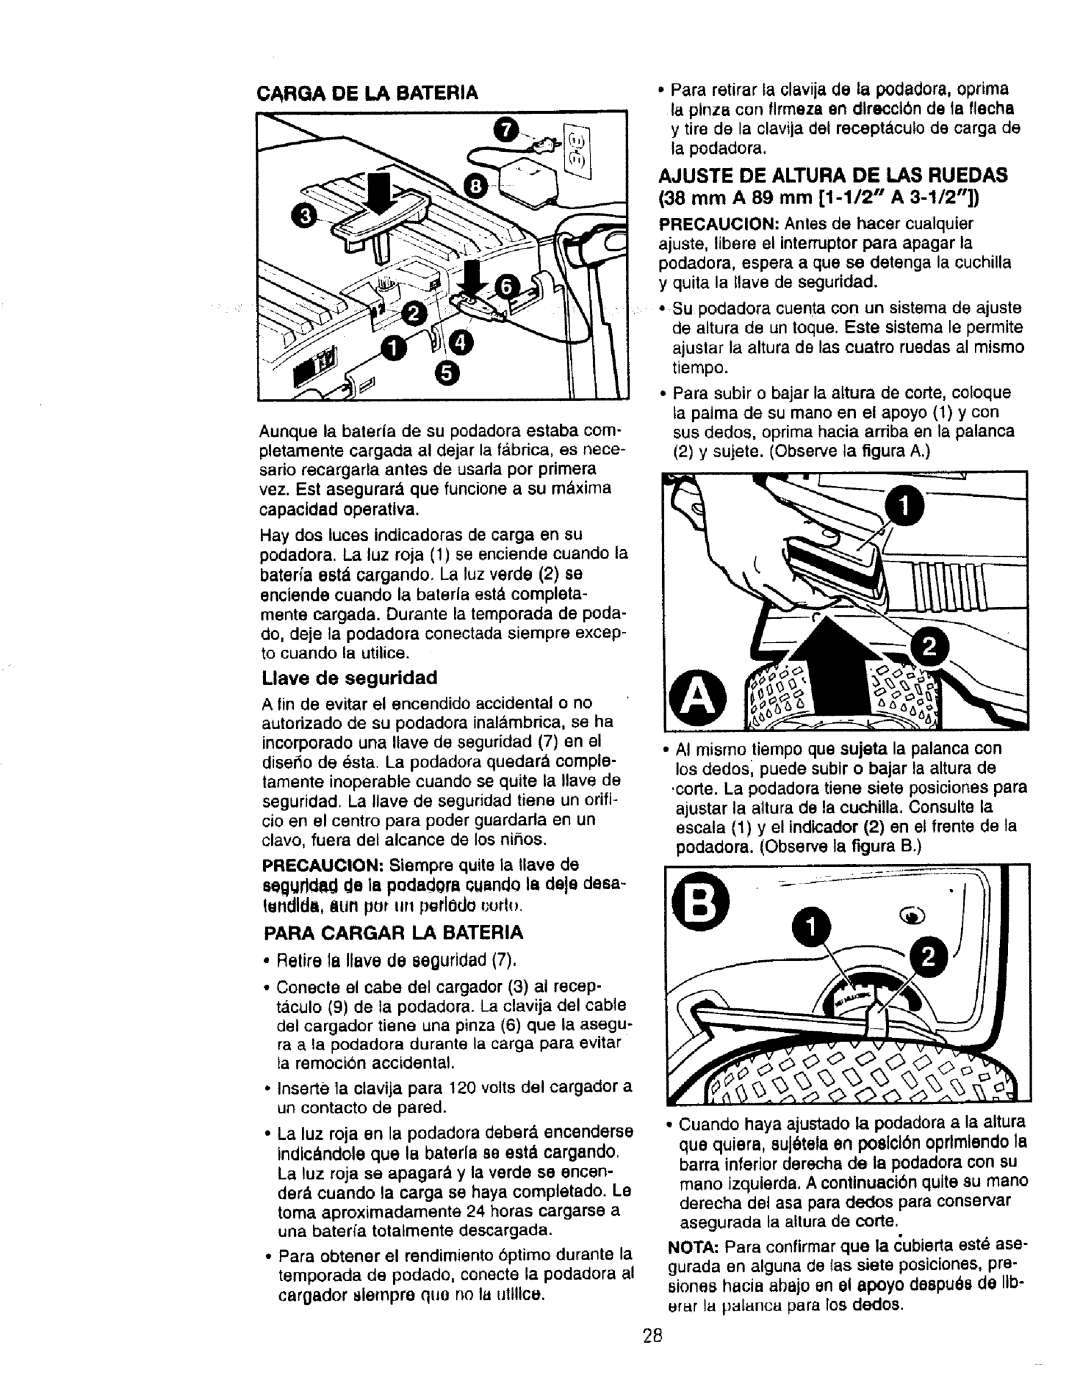 Craftsman 900.370520 manual Carqa De La Bateria 